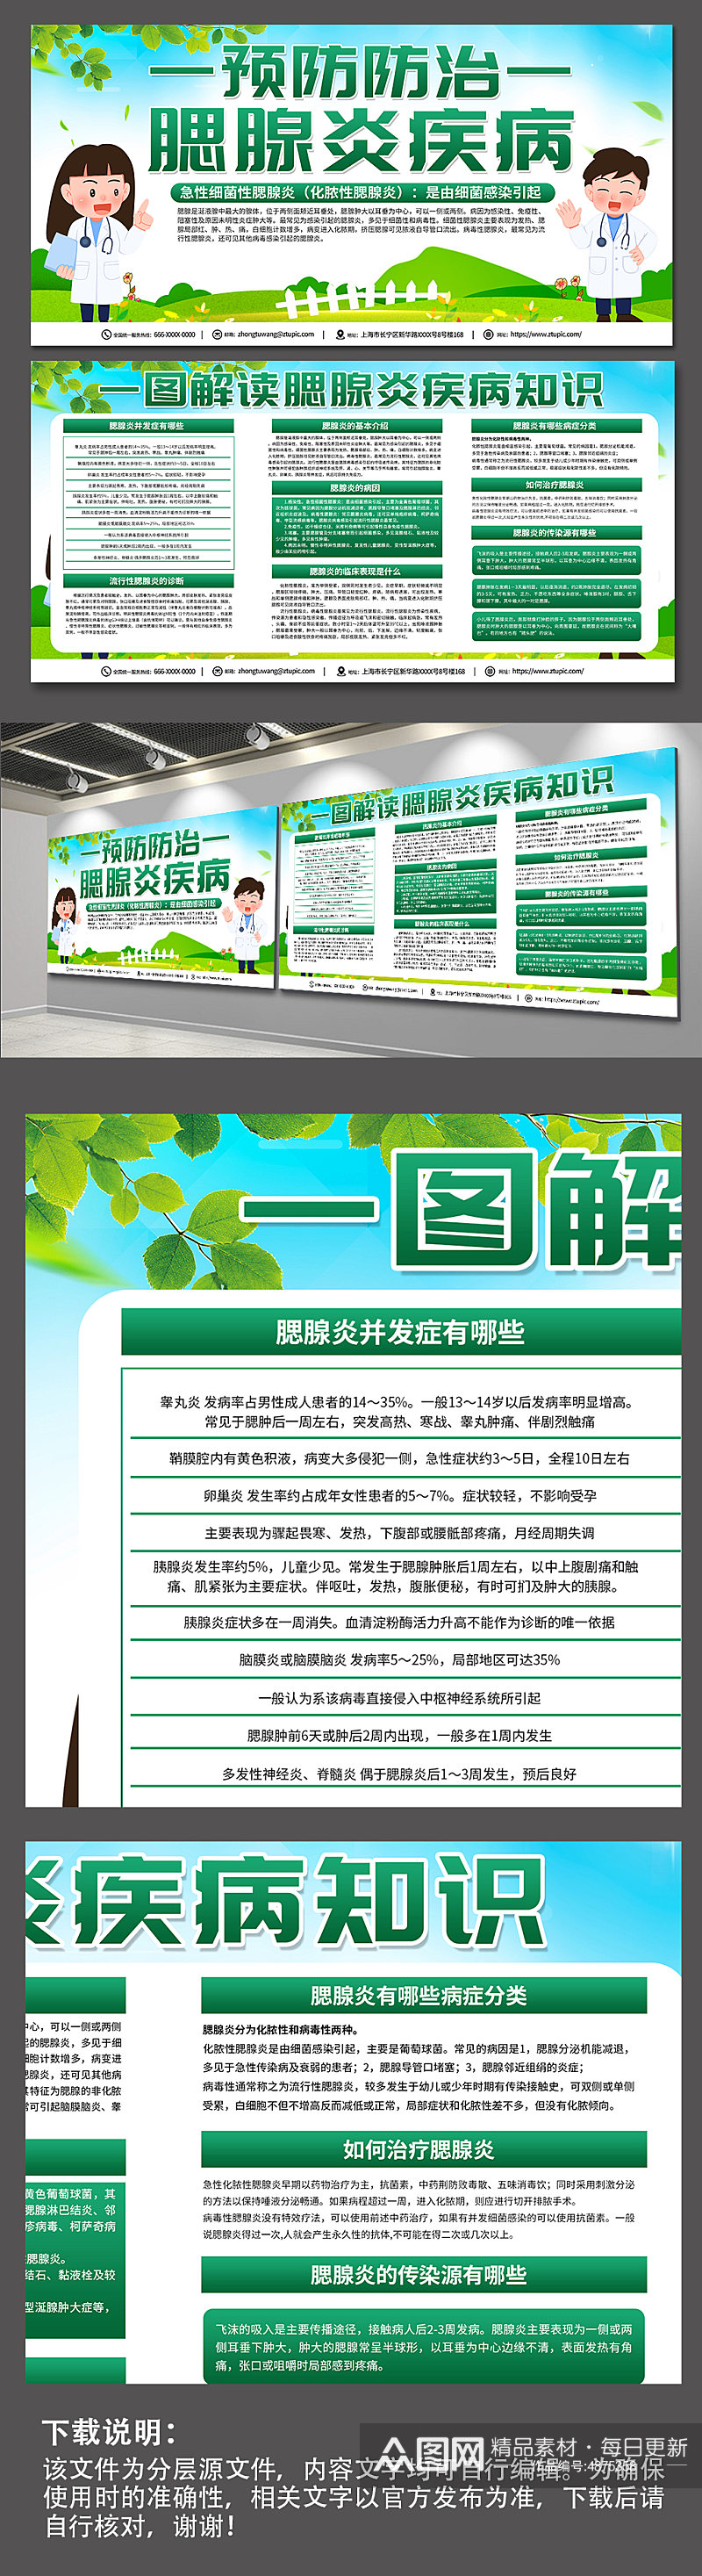 绿色腮腺炎防治知识医疗宣传展板素材